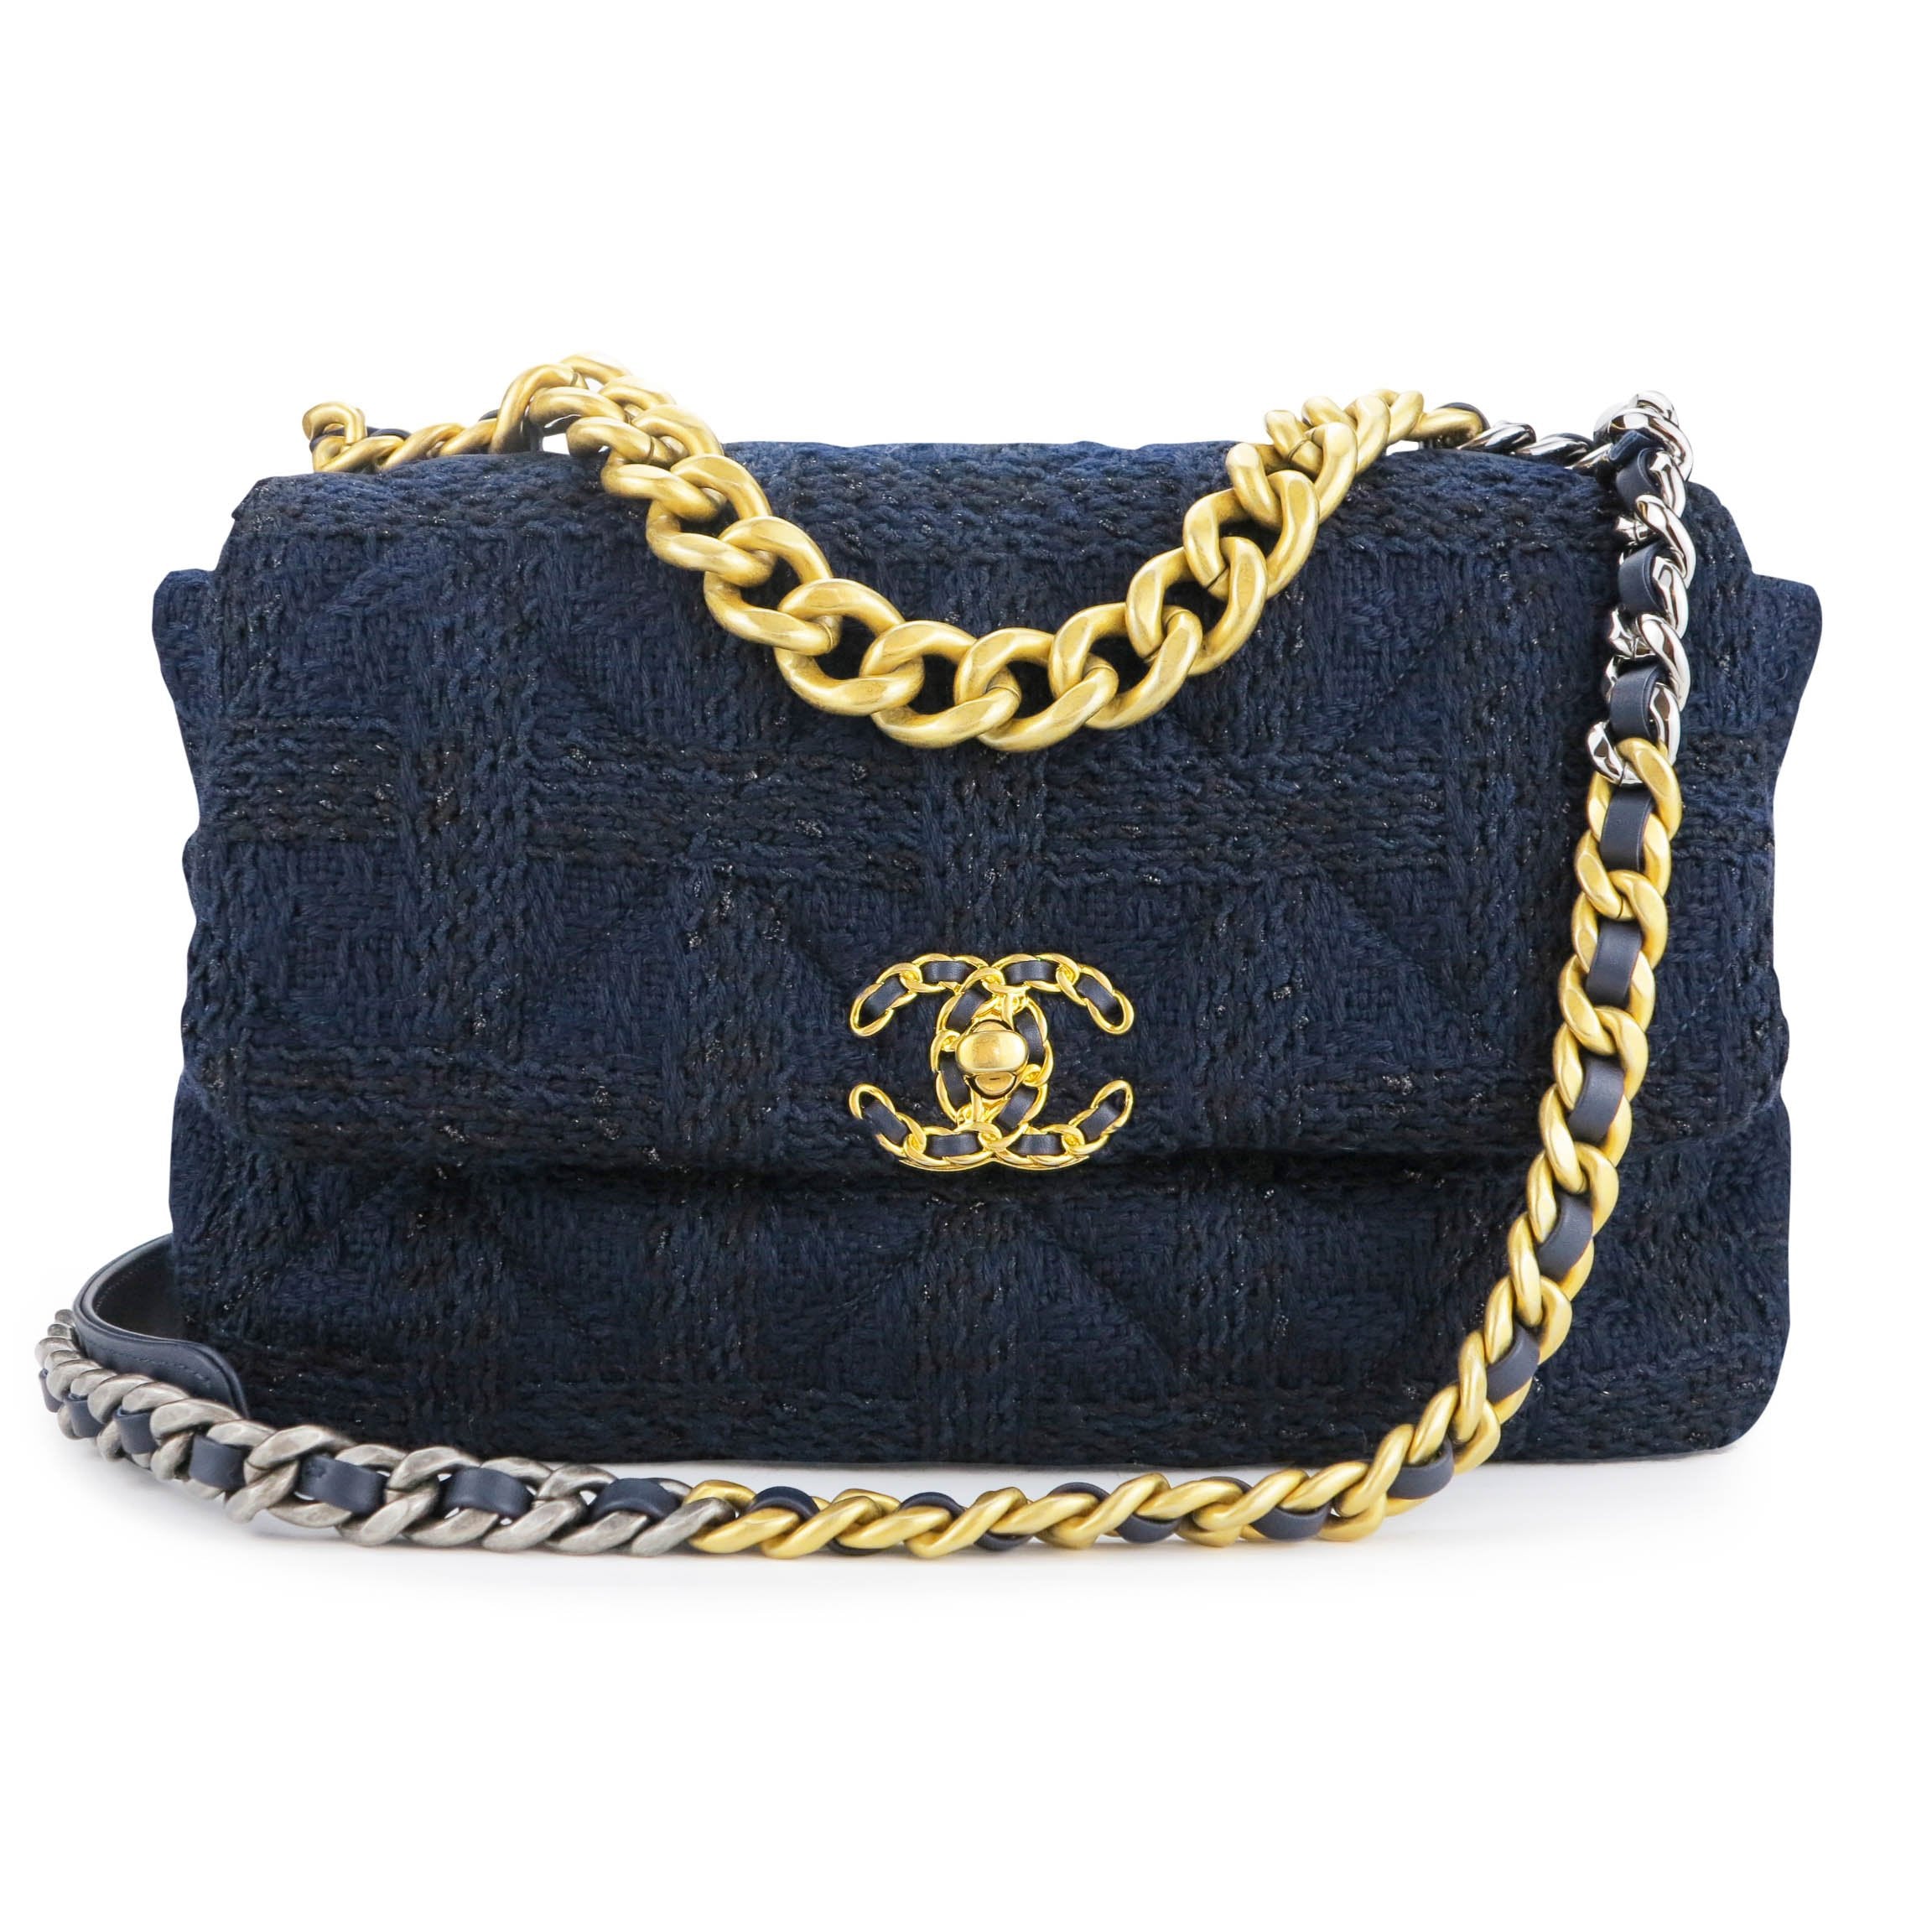 Chanel 19 Medium Flap Bag in Navy Black Tweed